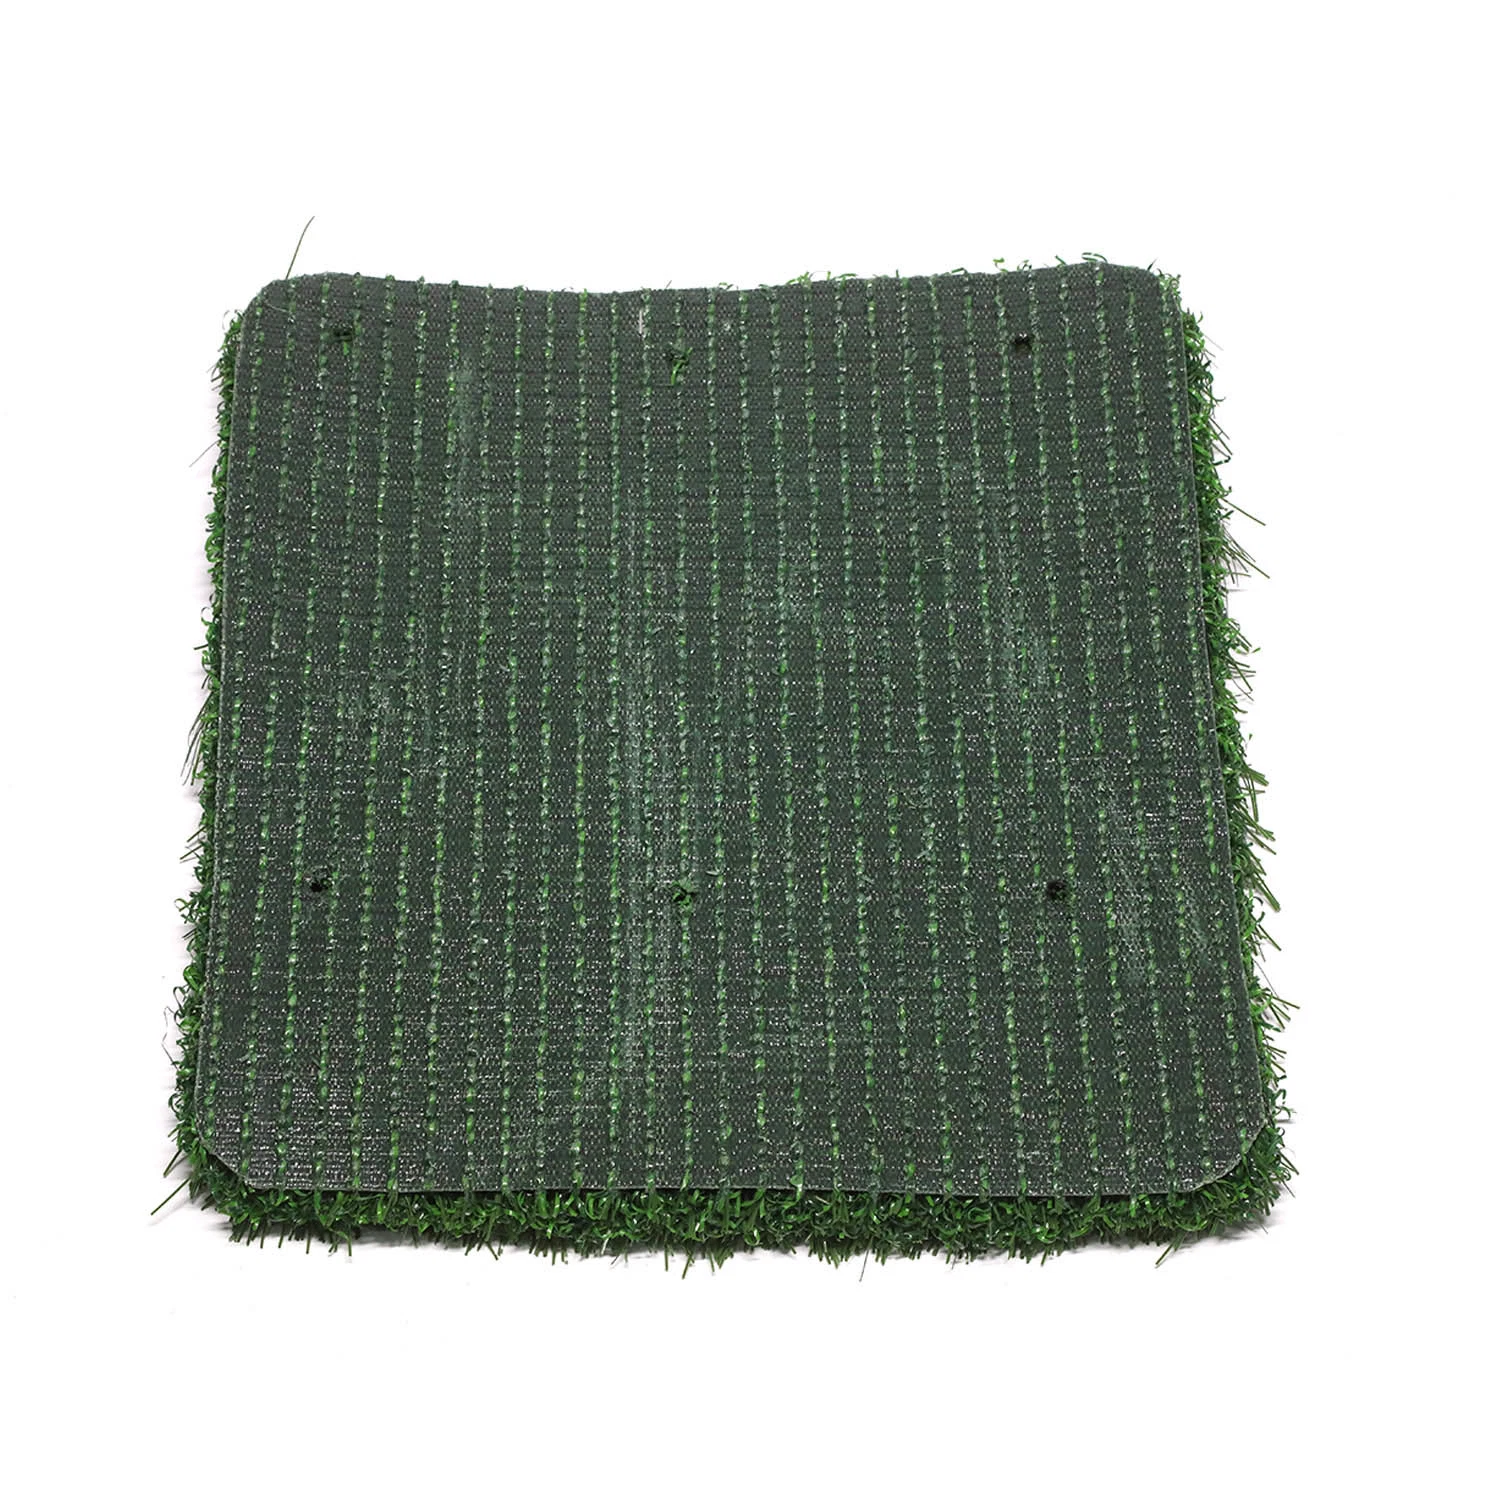 Field Green Short LW plastique Woven Bags Grass Factory artificiel Gazon